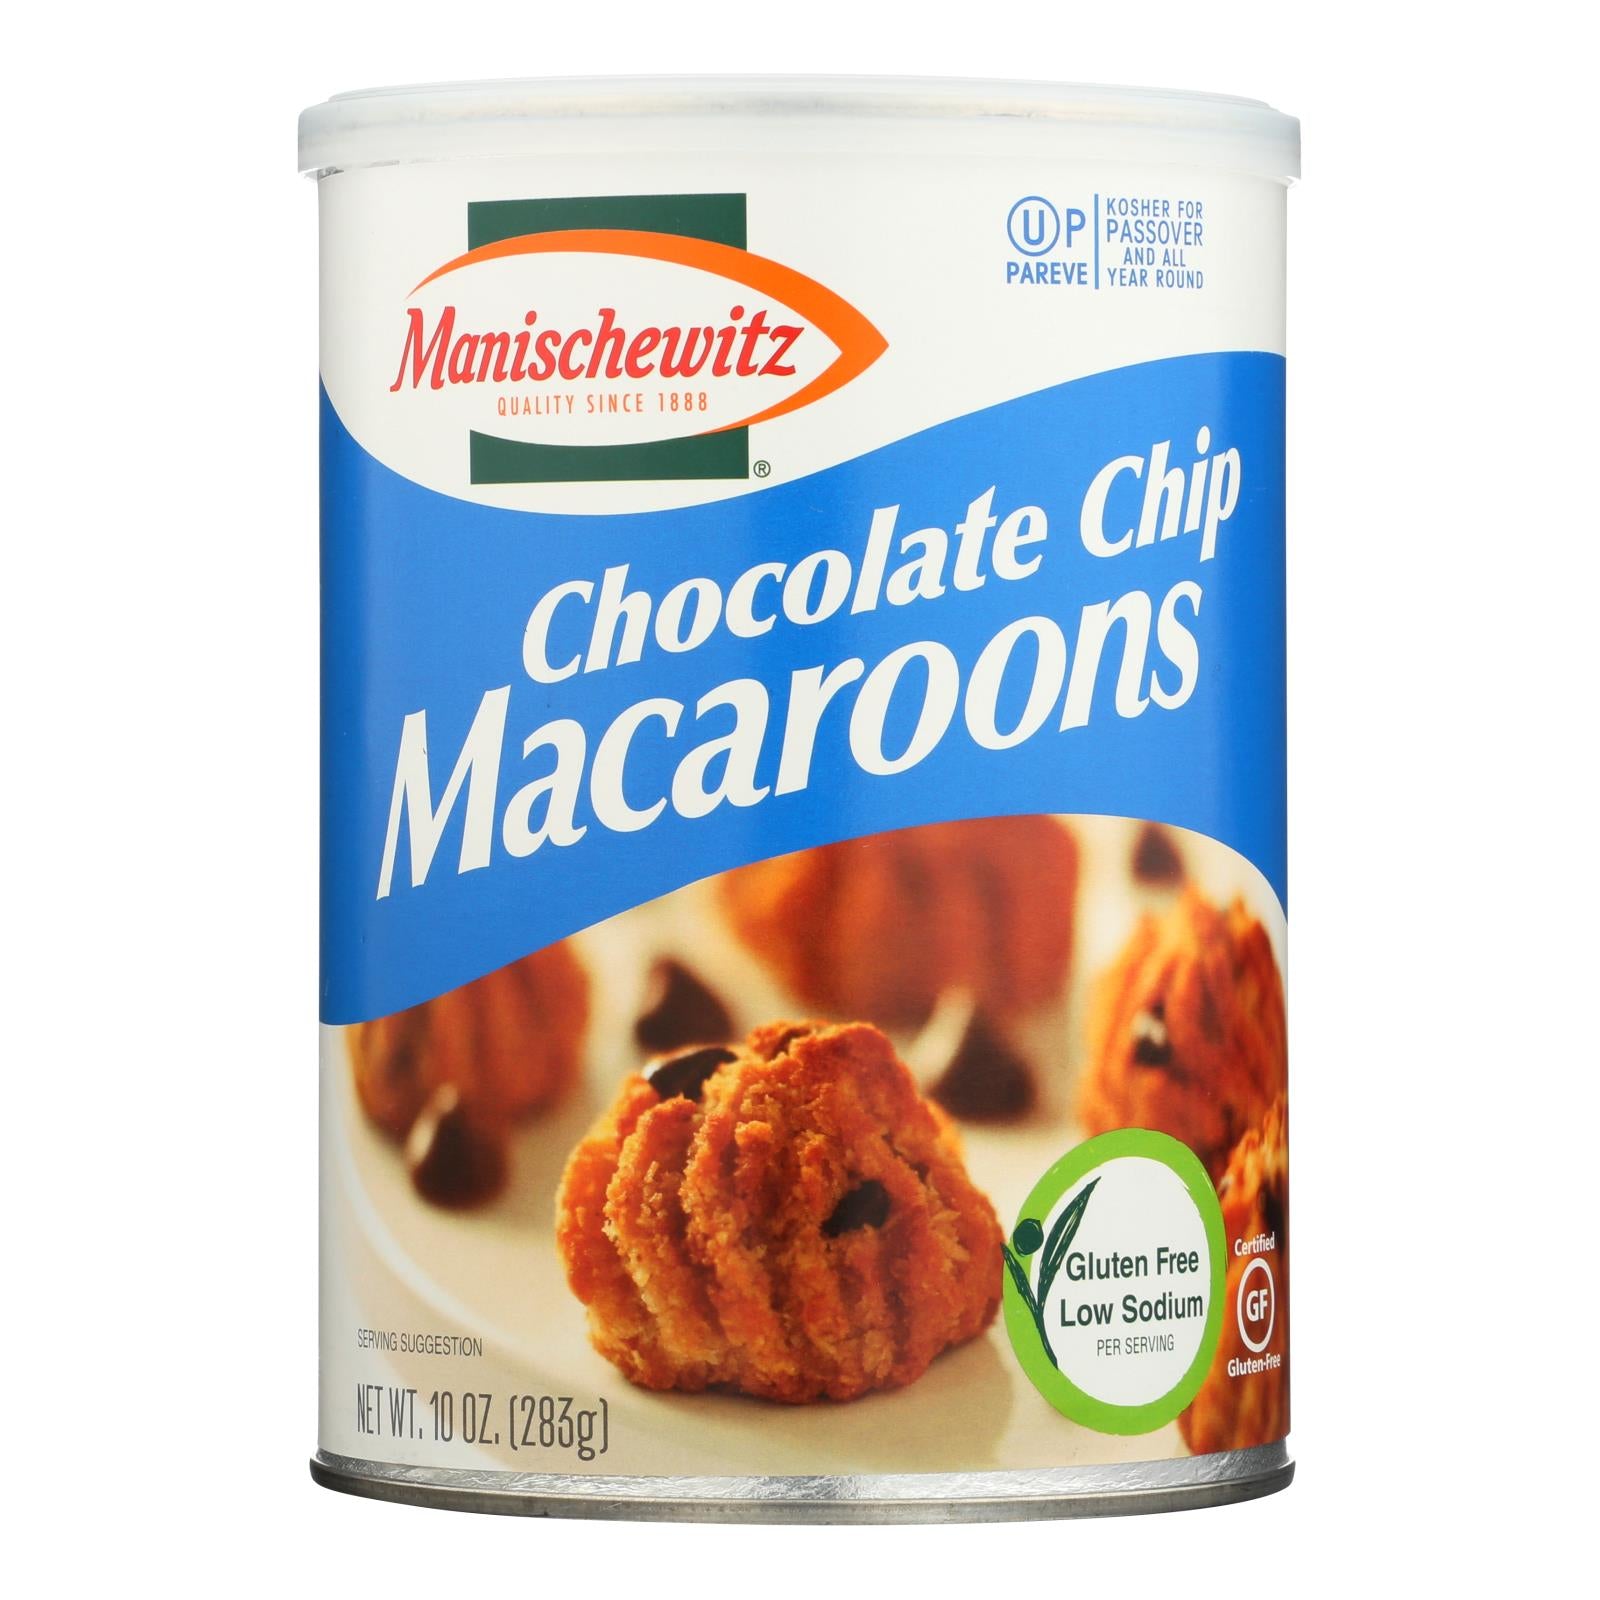 Manischewitz - Macaroon Chocolate Chips Kosher for Passover - Case of 12-10 OZ